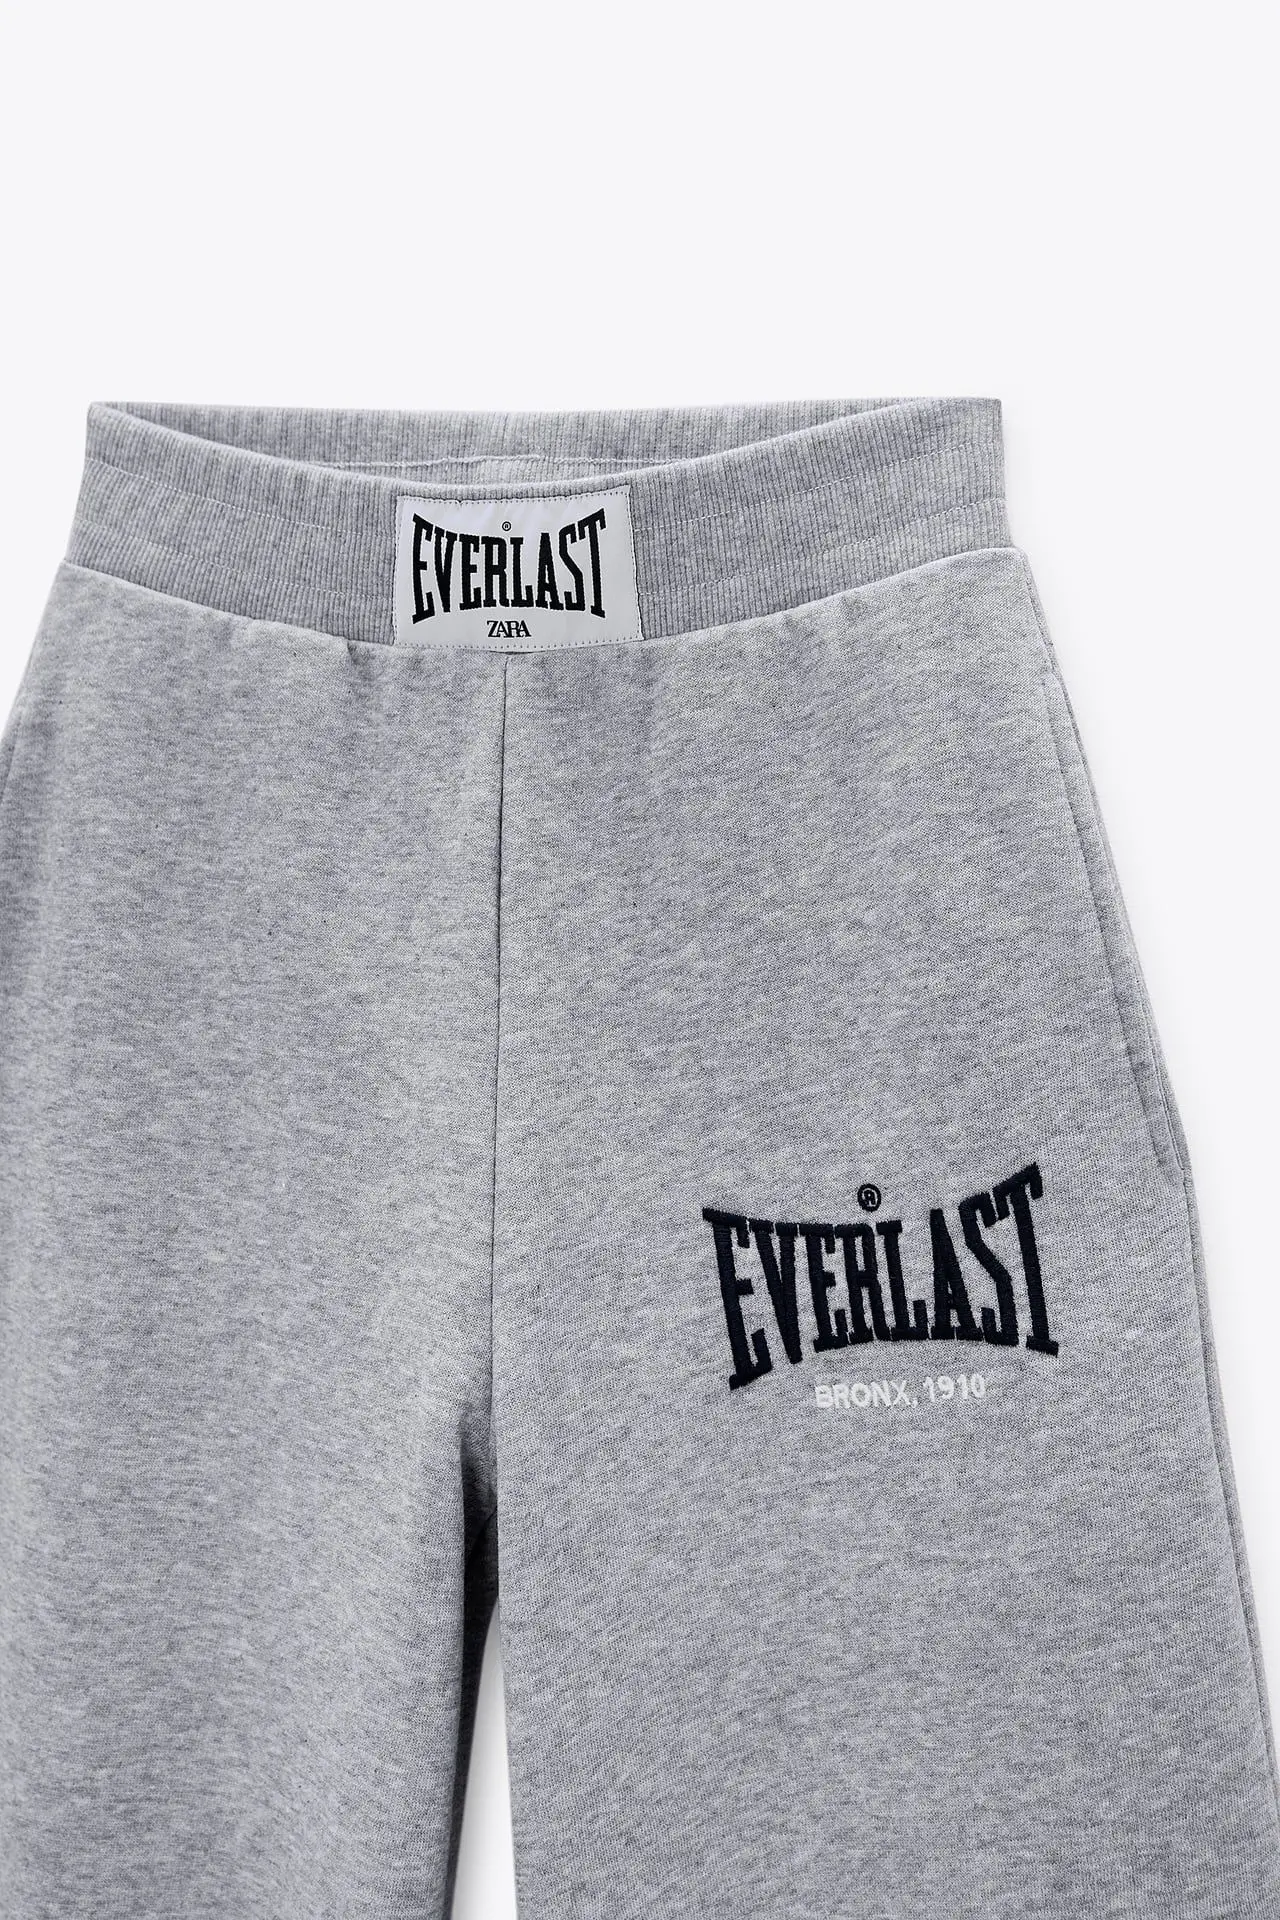 marca de ropa everlast - Cuántos años tiene la marca Everlast